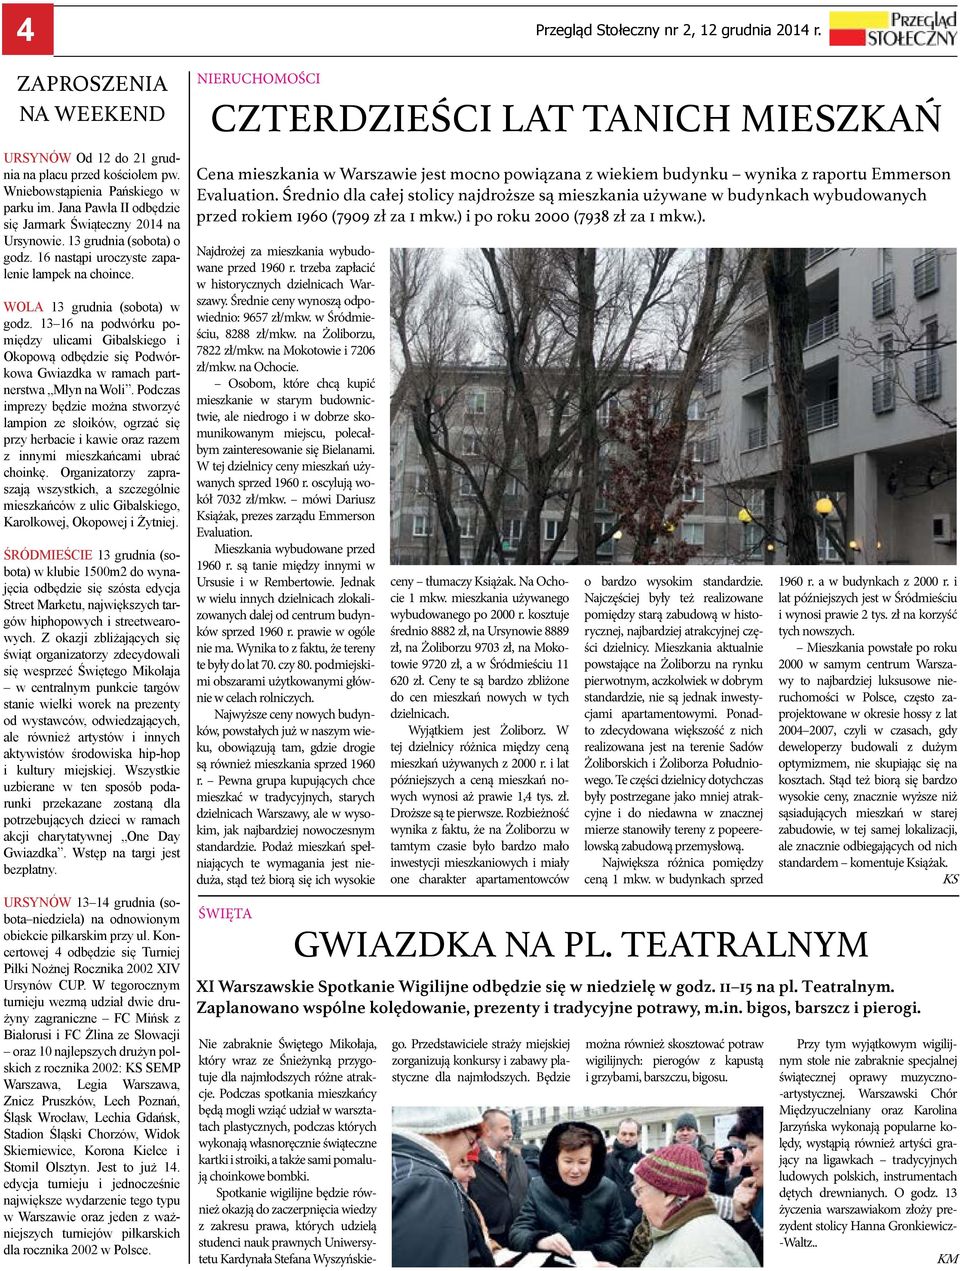 13 16 na podwórku pomiędzy ulicami Gibalskiego i Okopową odbędzie się Podwórkowa Gwiazdka w ramach partnerstwa Młyn na Woli.